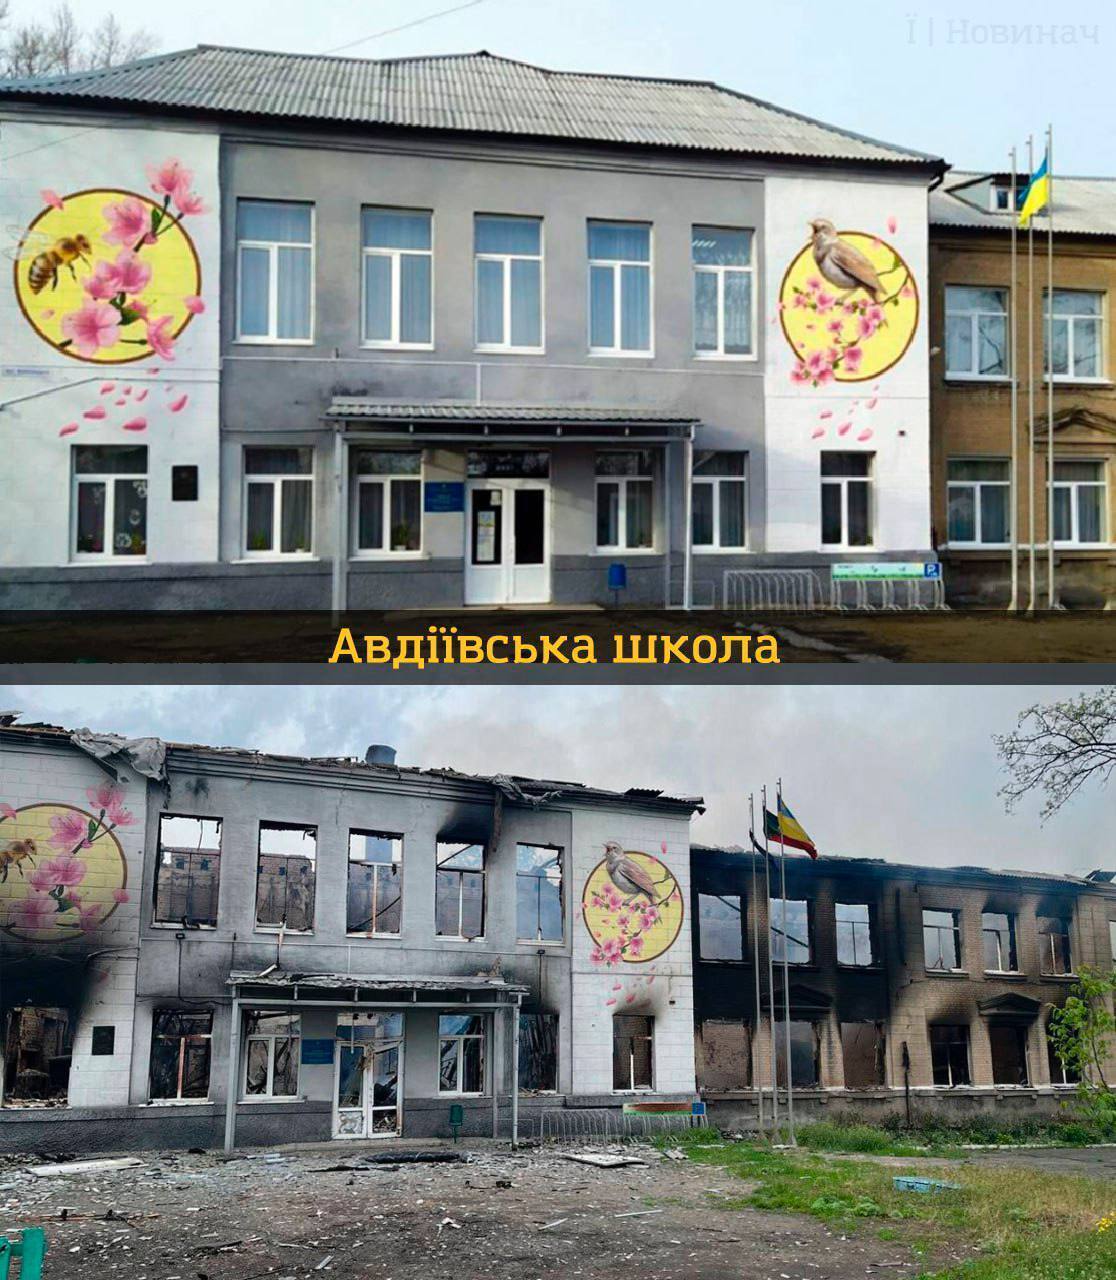 Українські освітні заклади ''до'' та ''після'' повномасштабного вторгнення рф